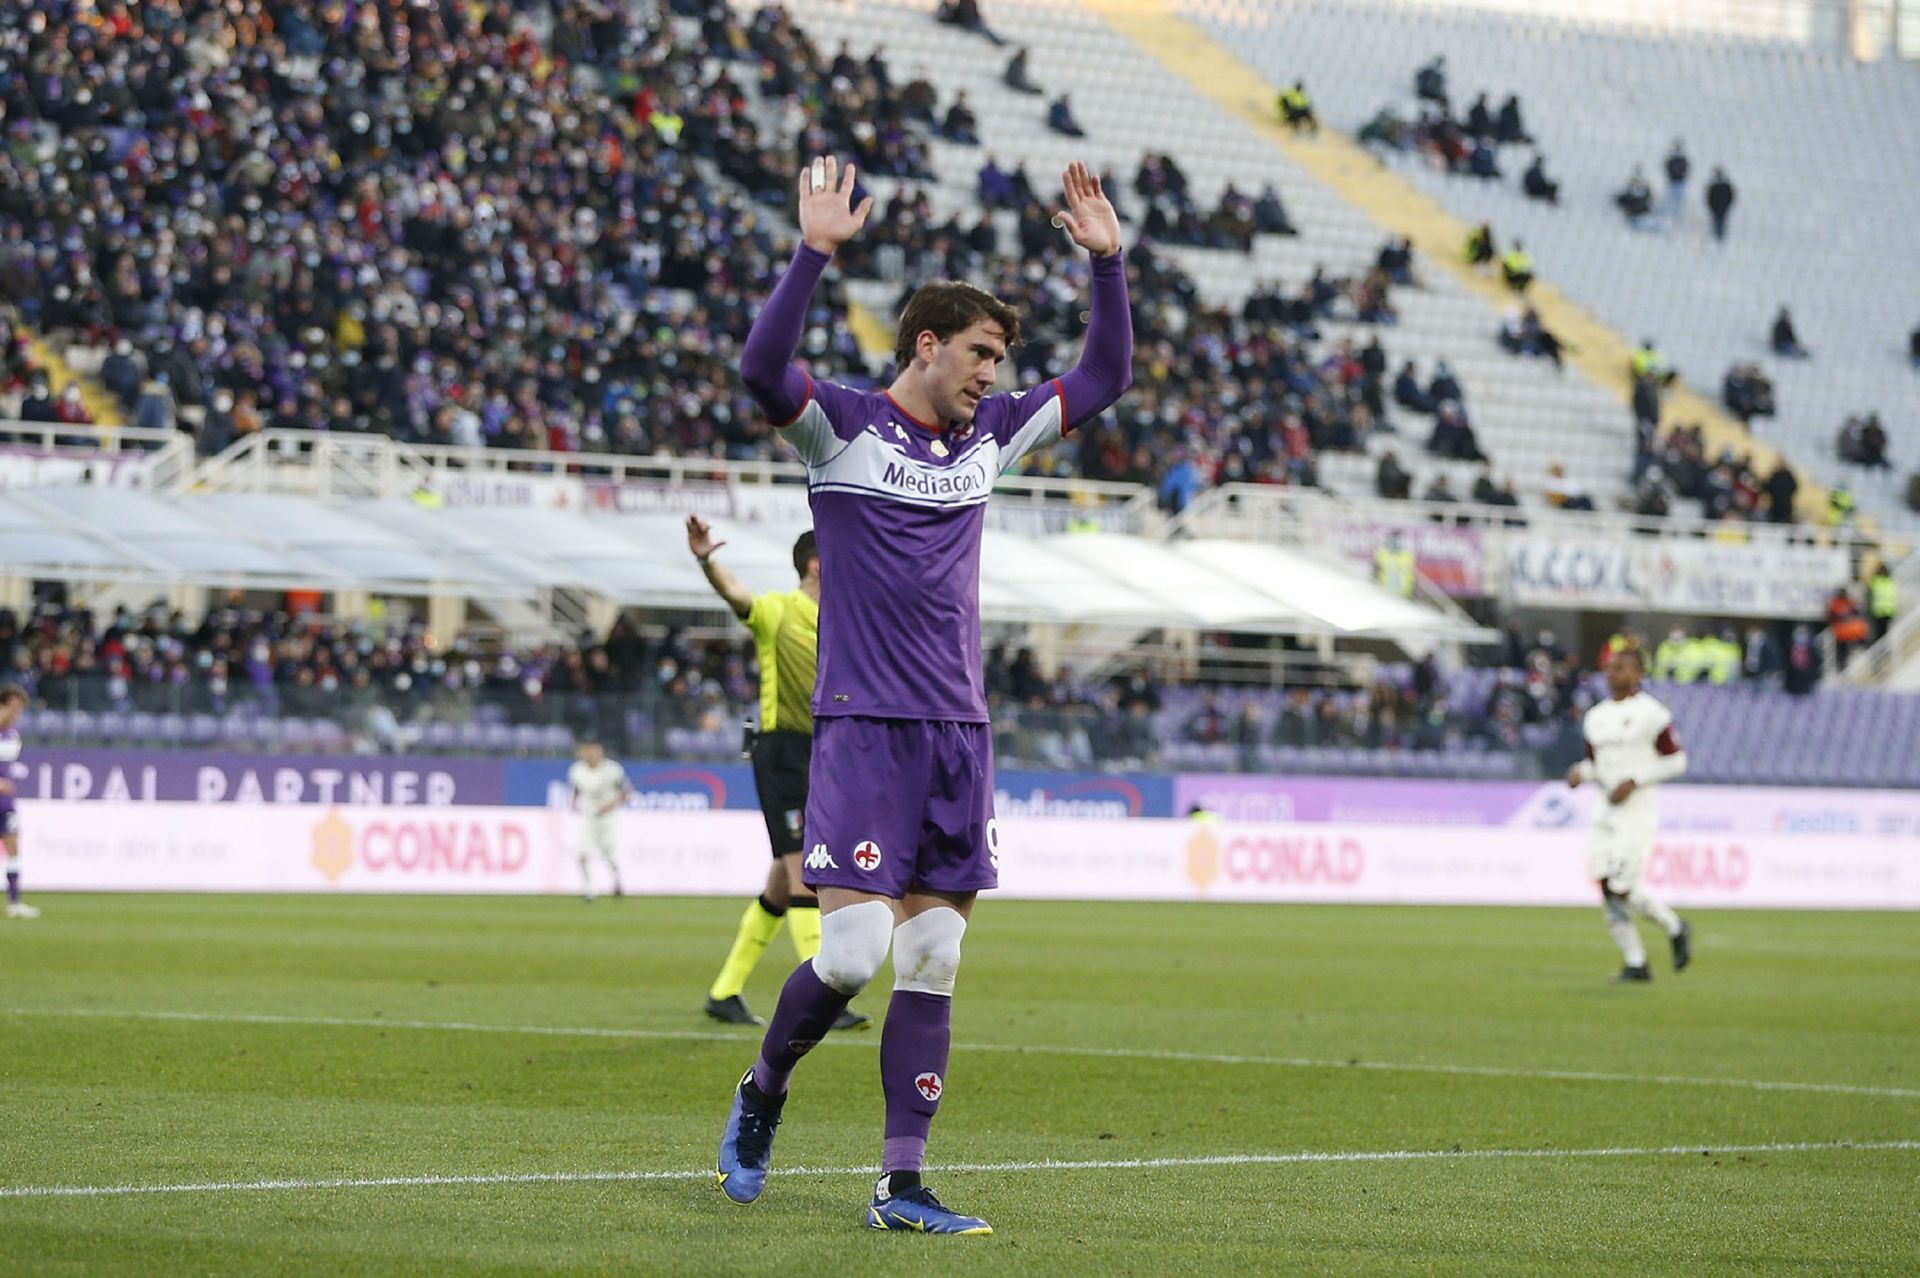 ACF Fiorentina v US Salernitana - Serie A